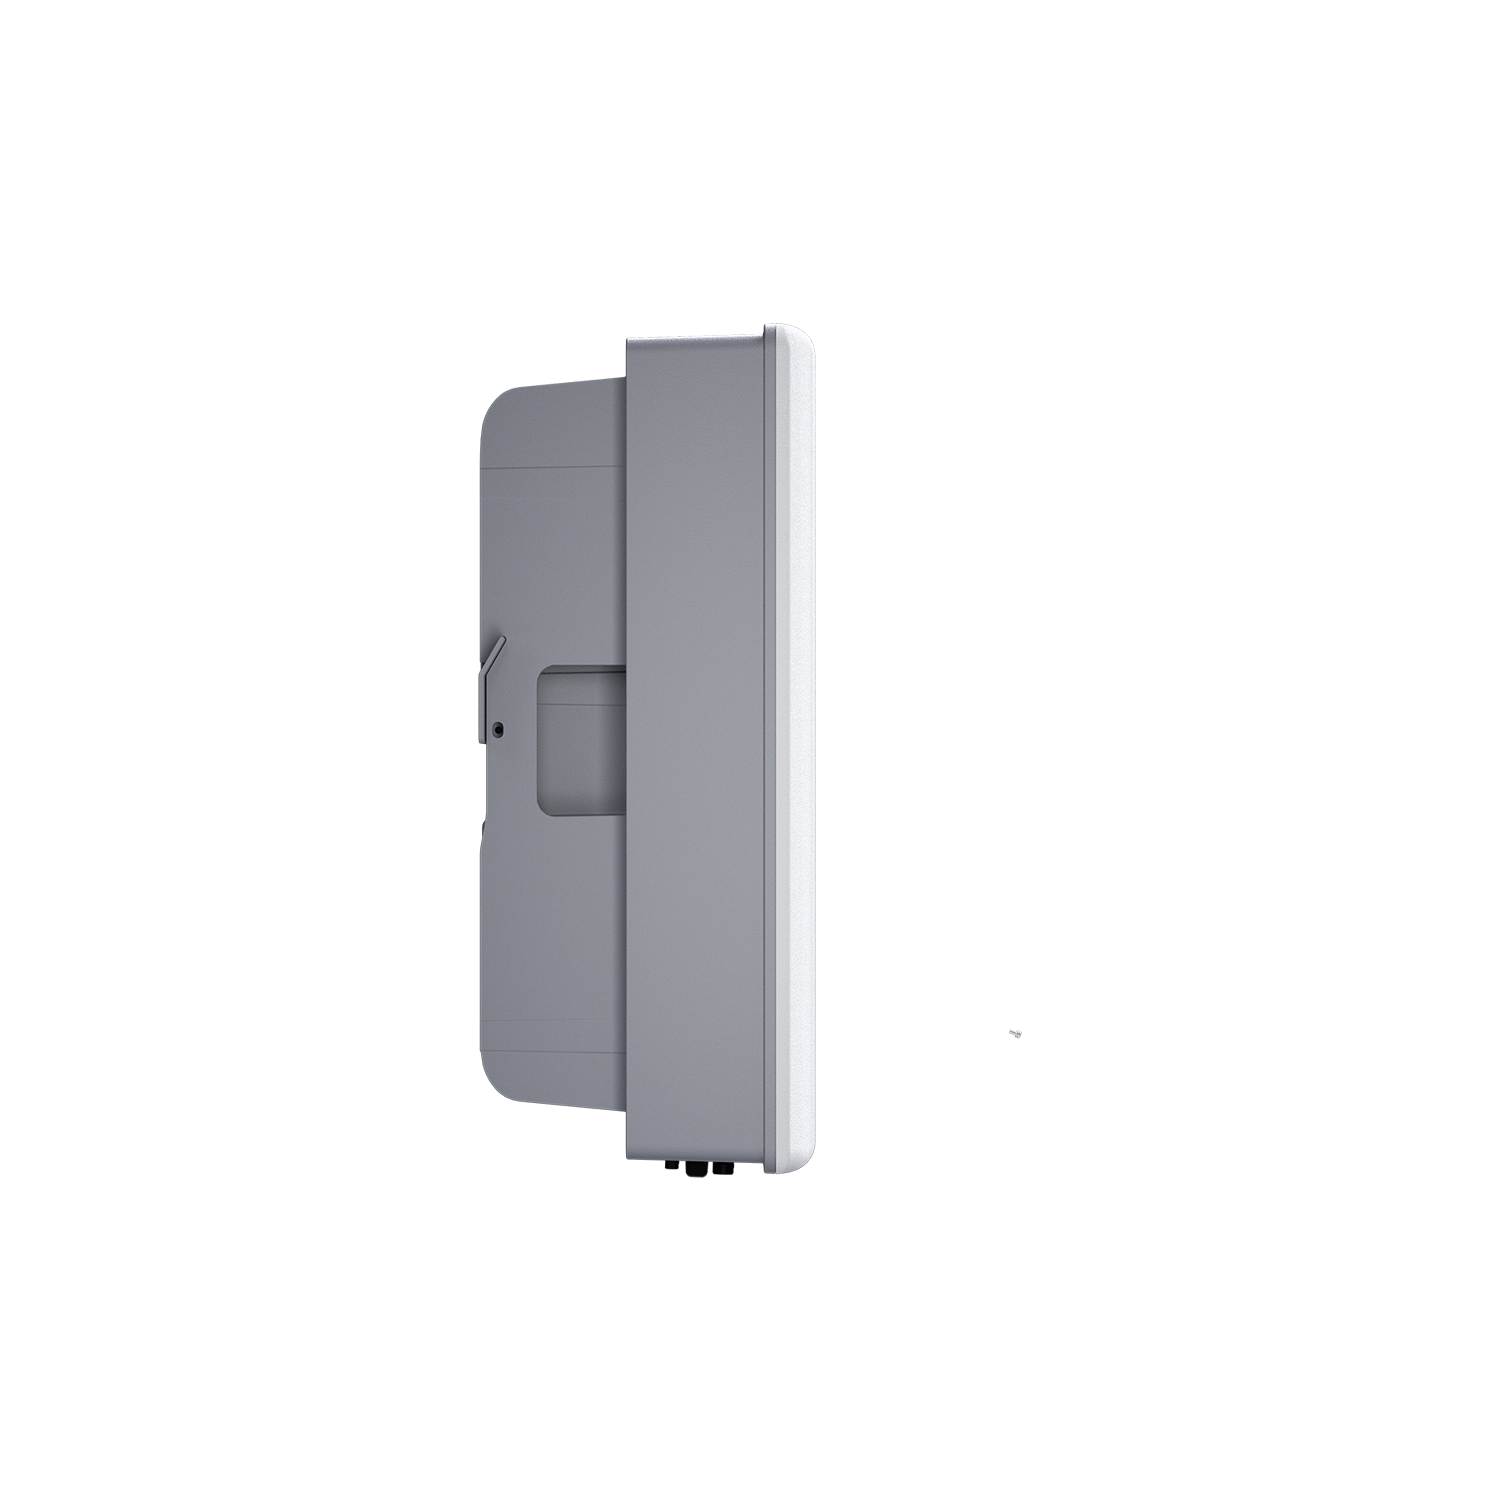 6kW Single-Phase Hybrid Inverter(Left side)-HINEN